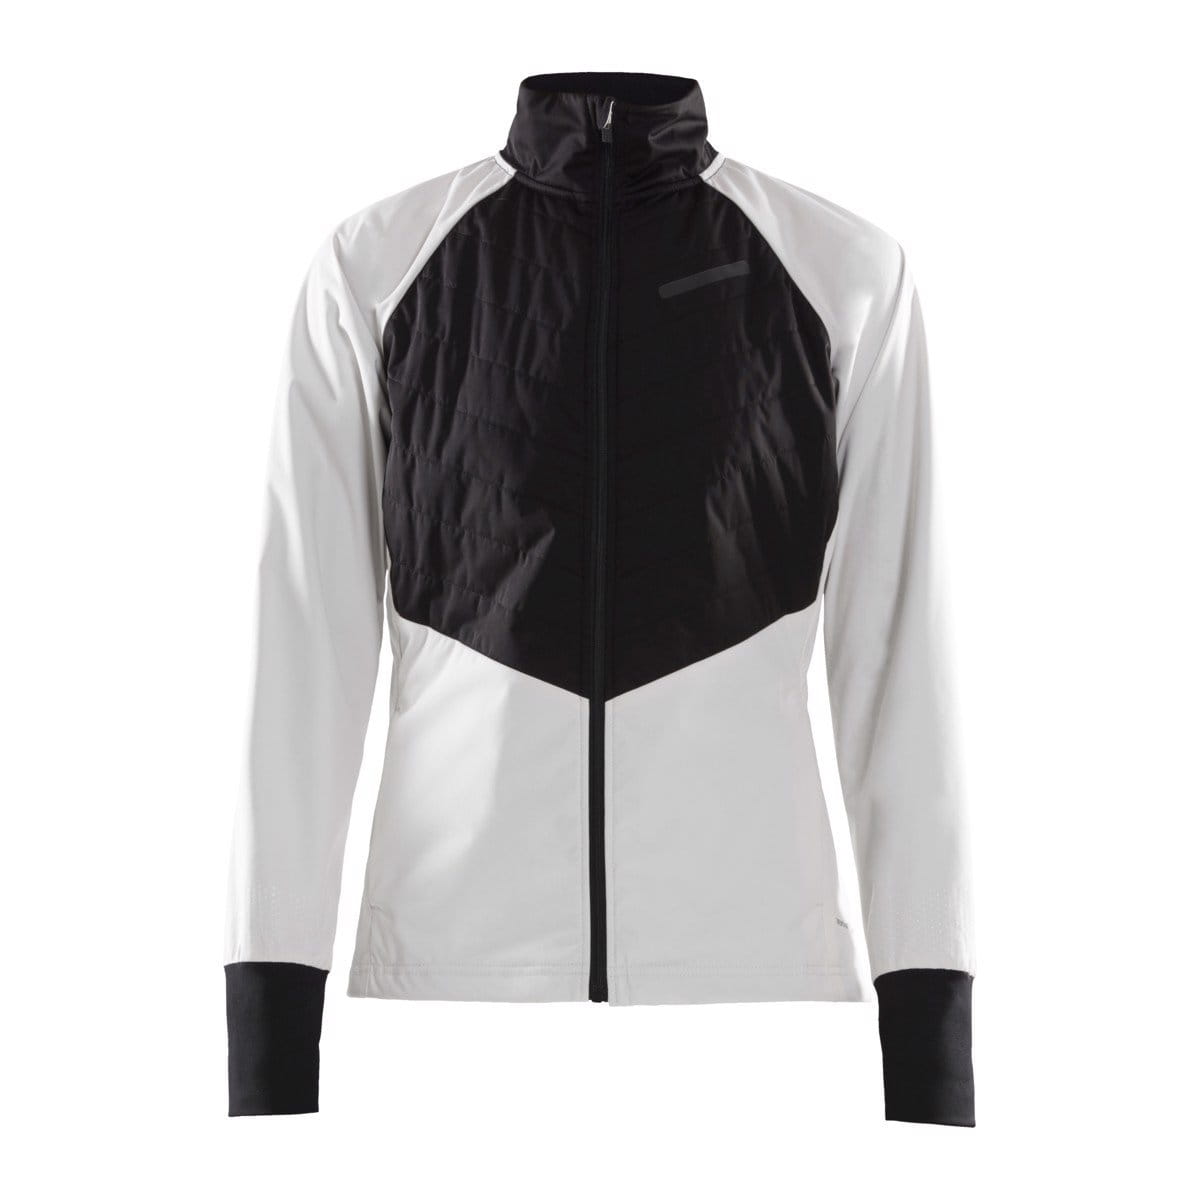 Dámská bunda na běžky Craft W Bunda Storm Balance bílá s černou